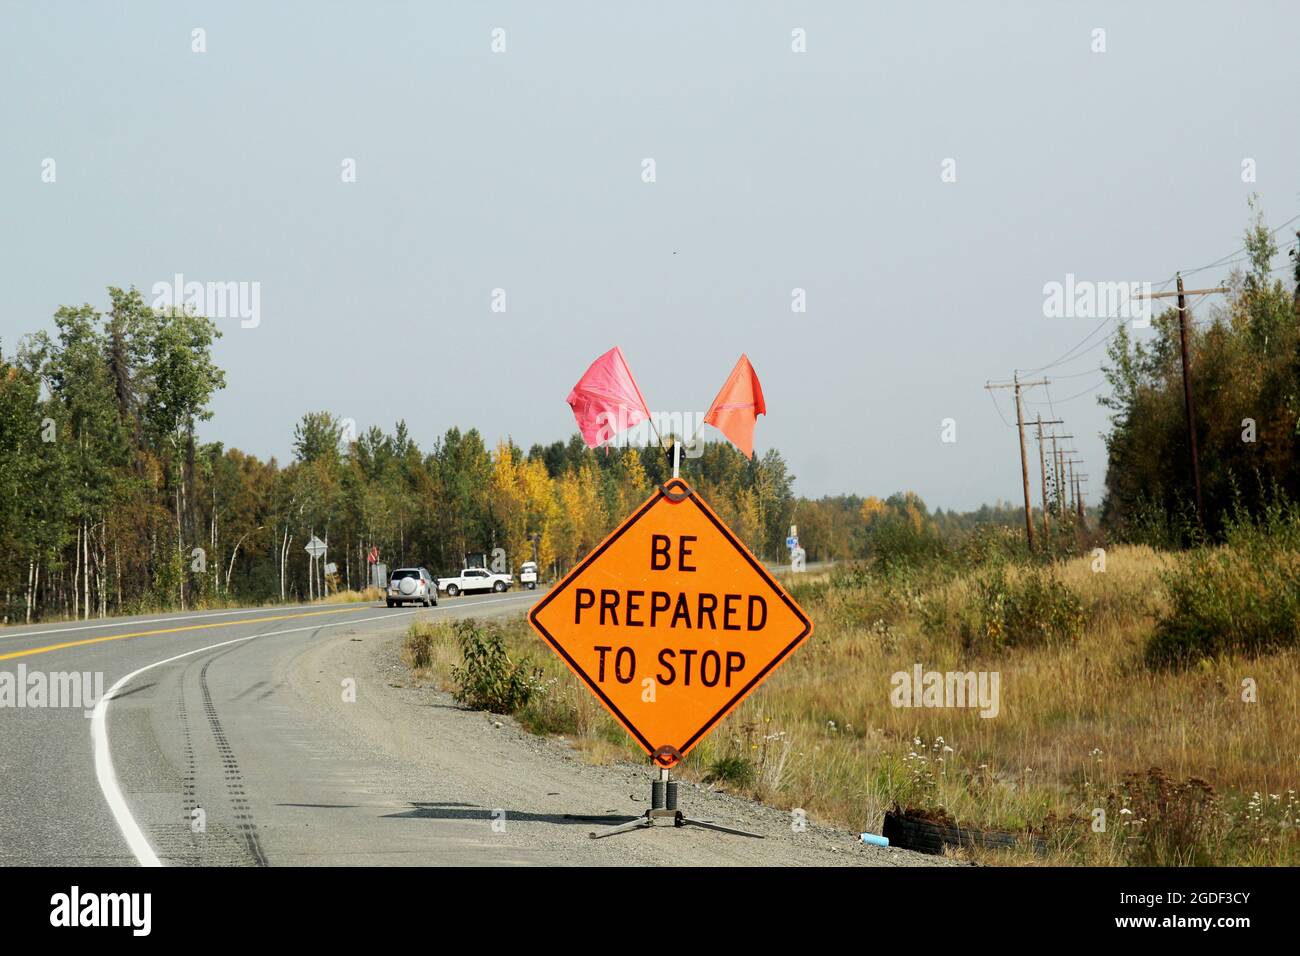 Amerikanisches Verkehrszeichen mit der Aufschrift 'be Prepared to stop' in orange mit einem roten Fähnchen und einem orangenen Fähnchen, Alaska, États-Unis. Banque D'Images